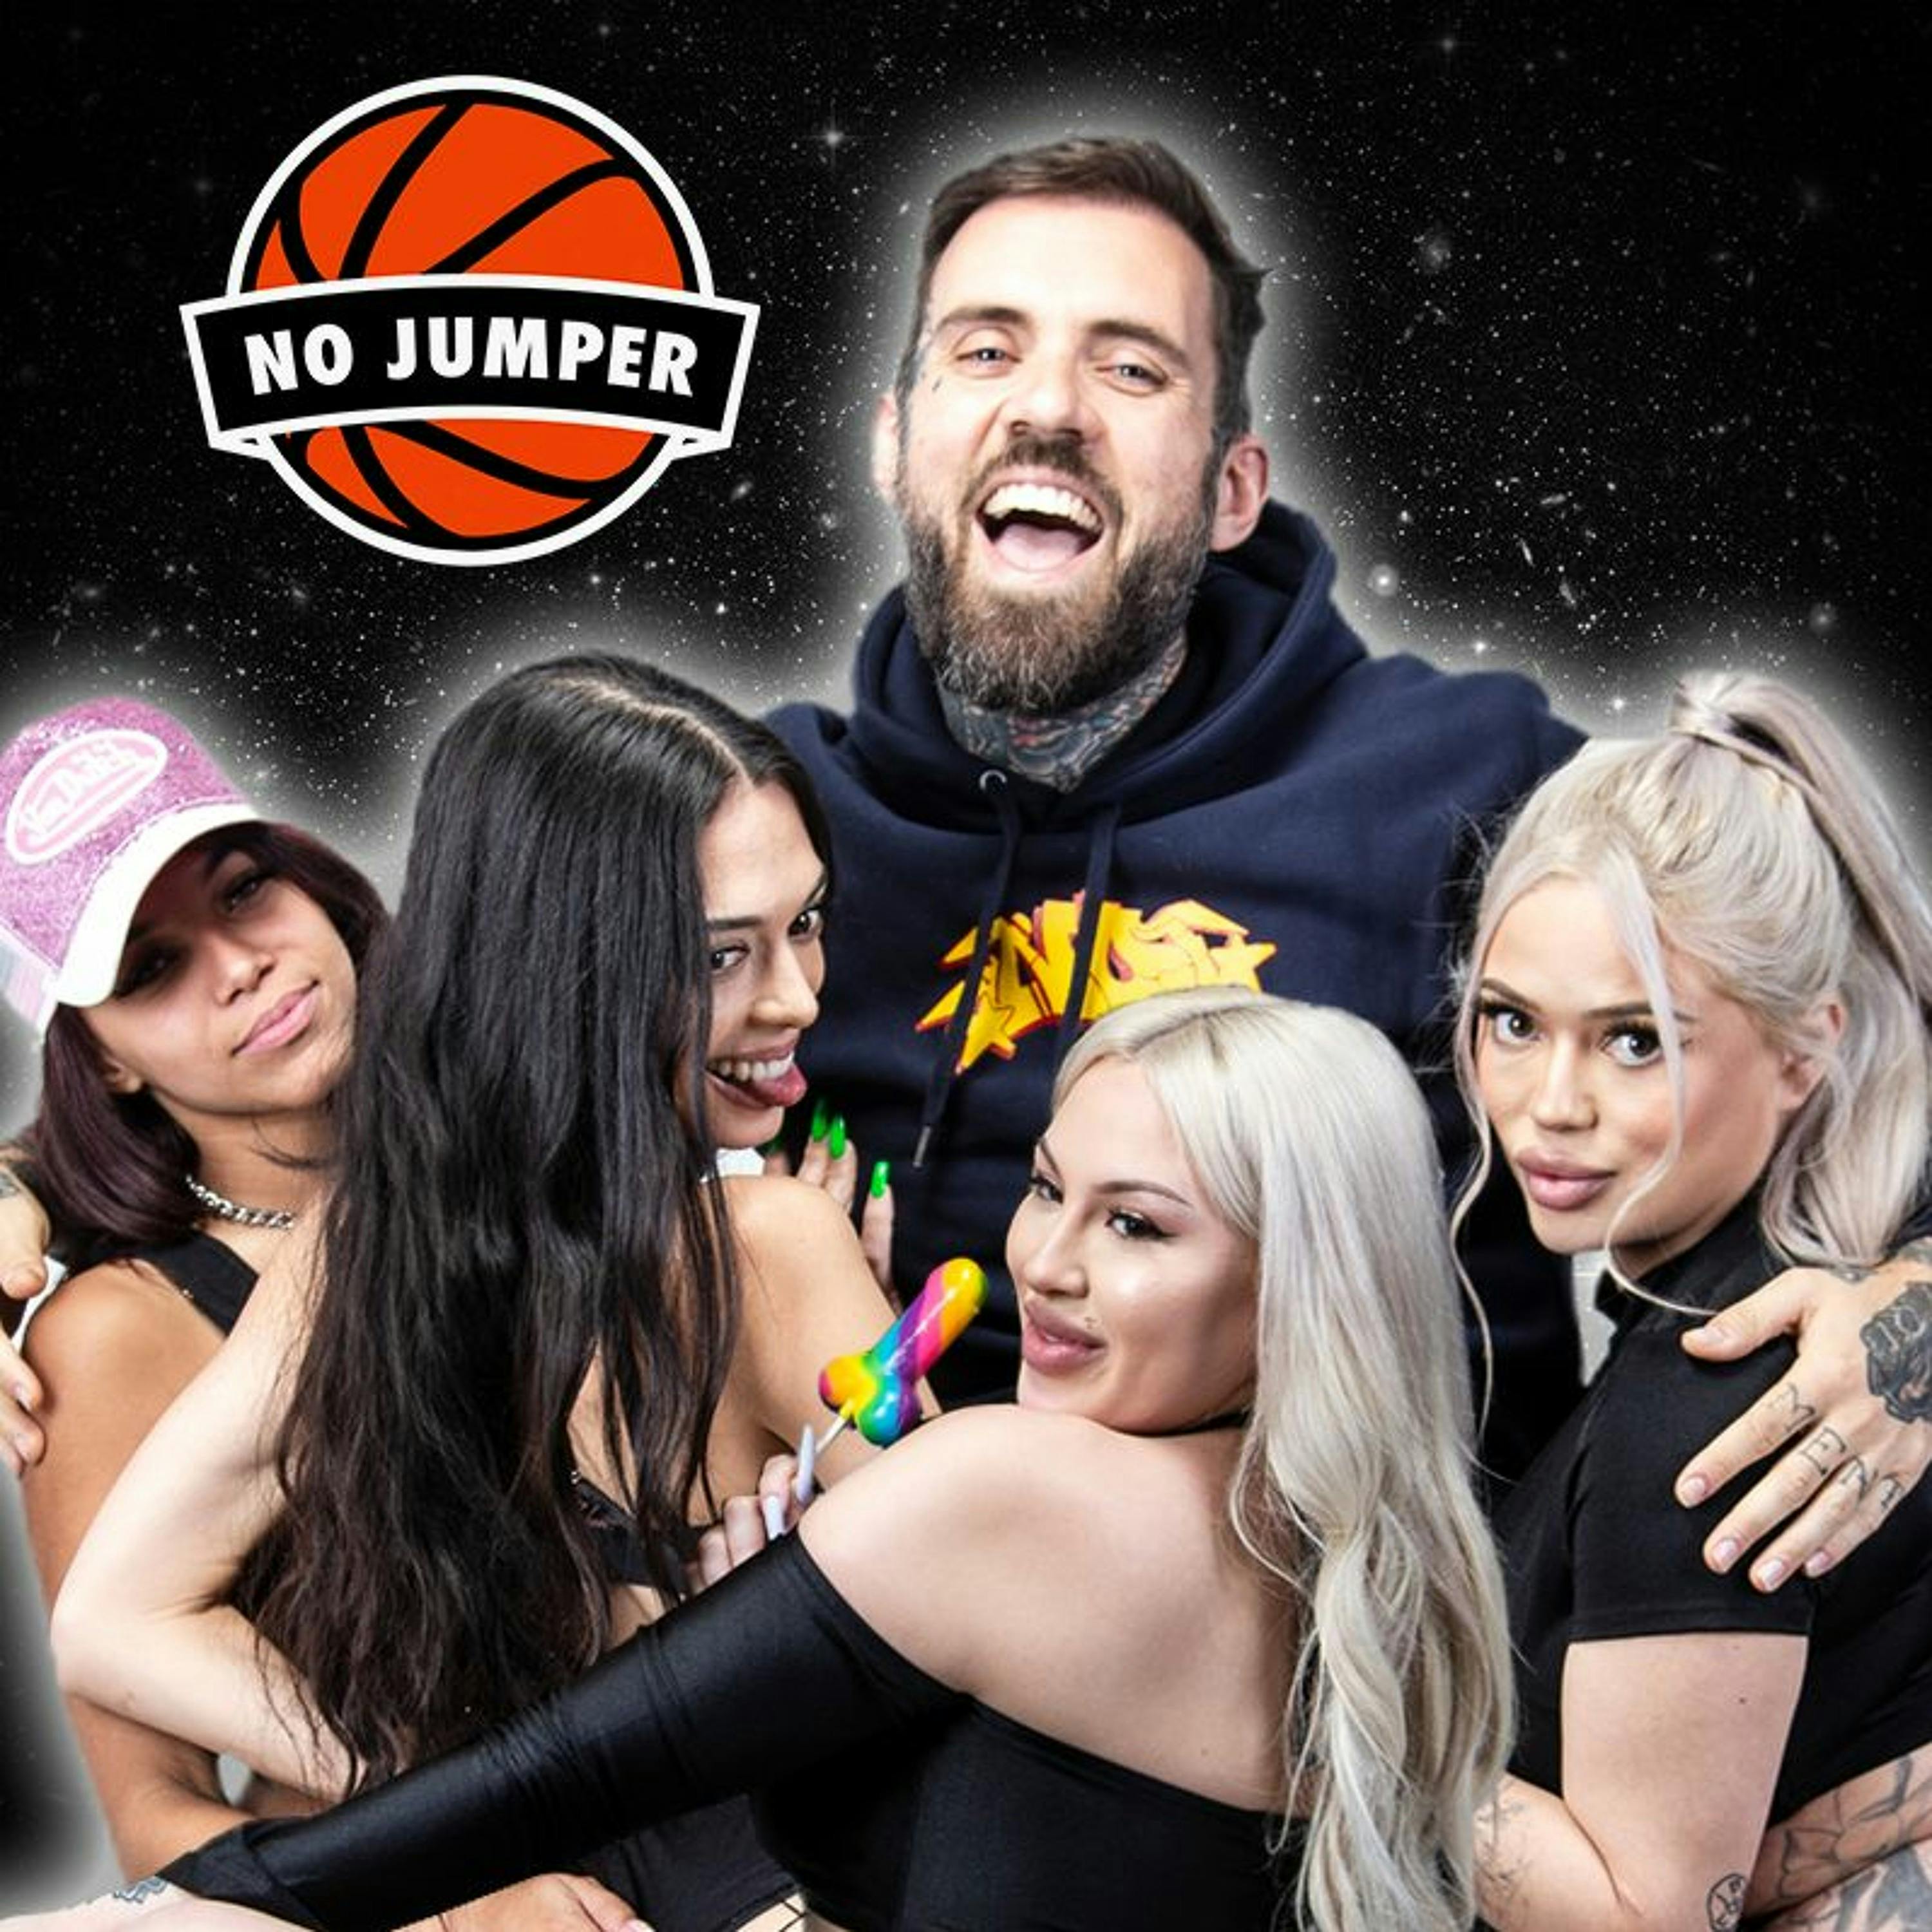 No Jumper - Podcast